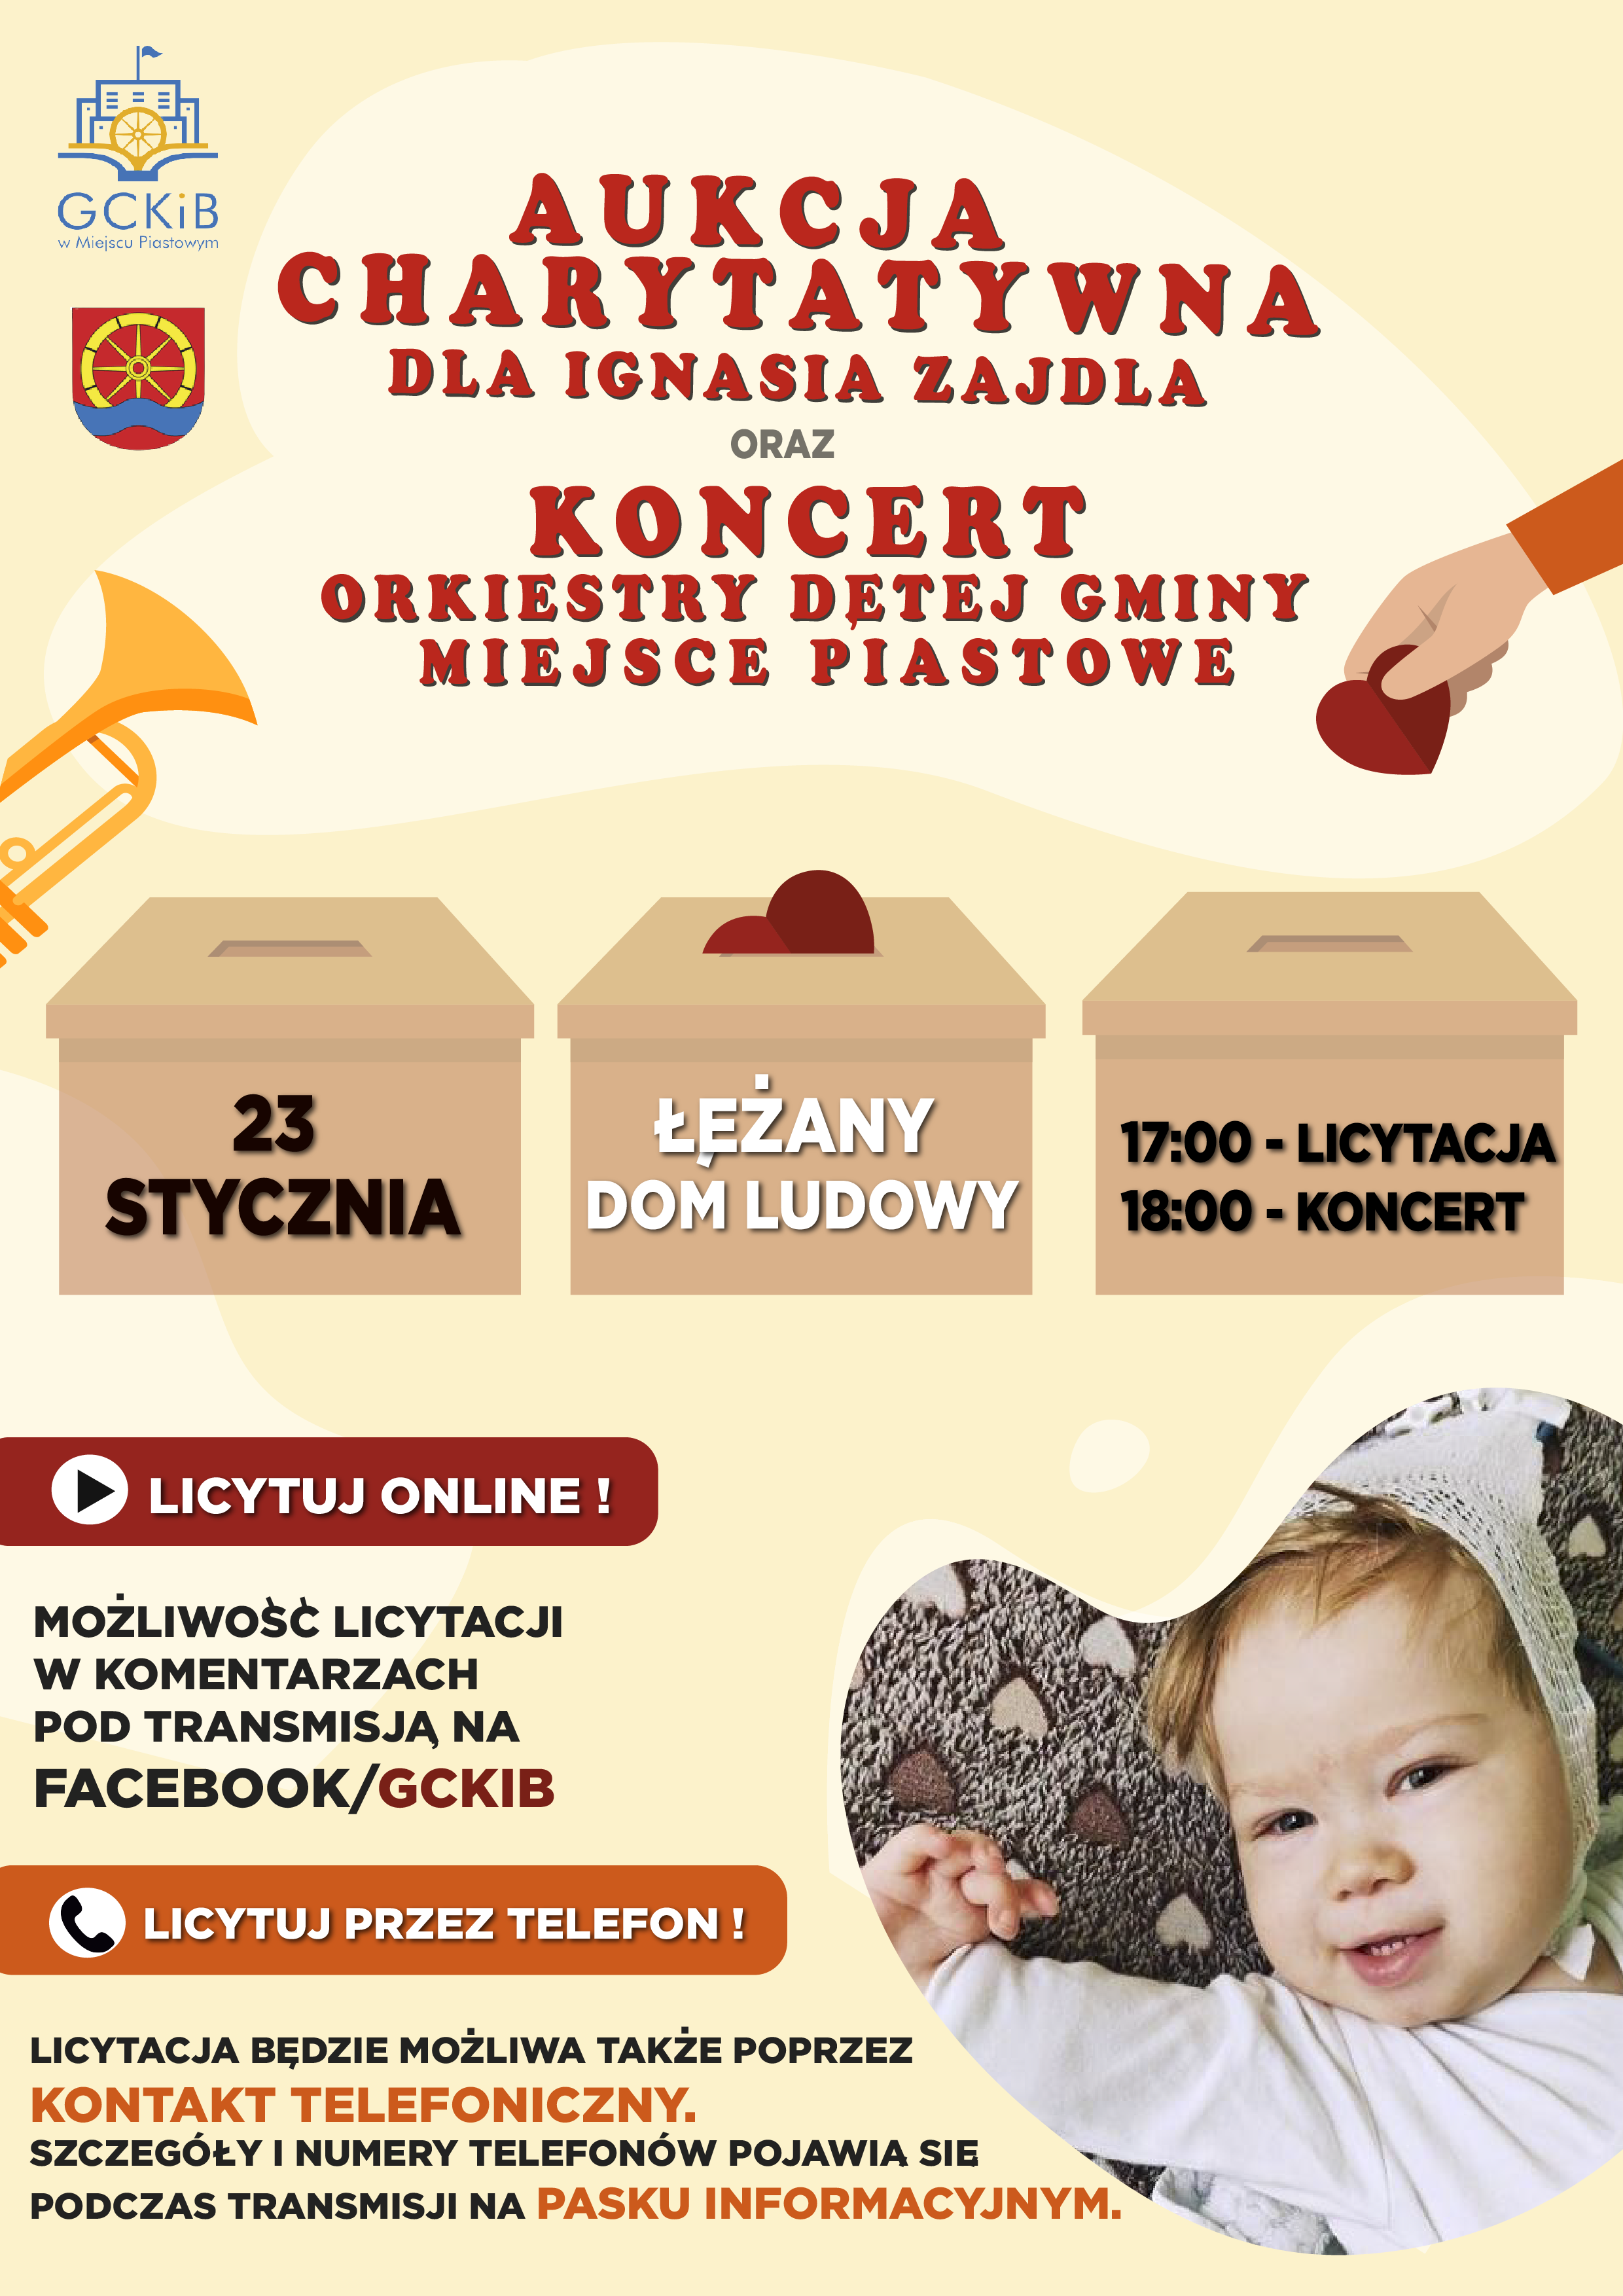 You are currently viewing Licytuj dla Ignasia! Aukcja charytatywna wraz z koncertem